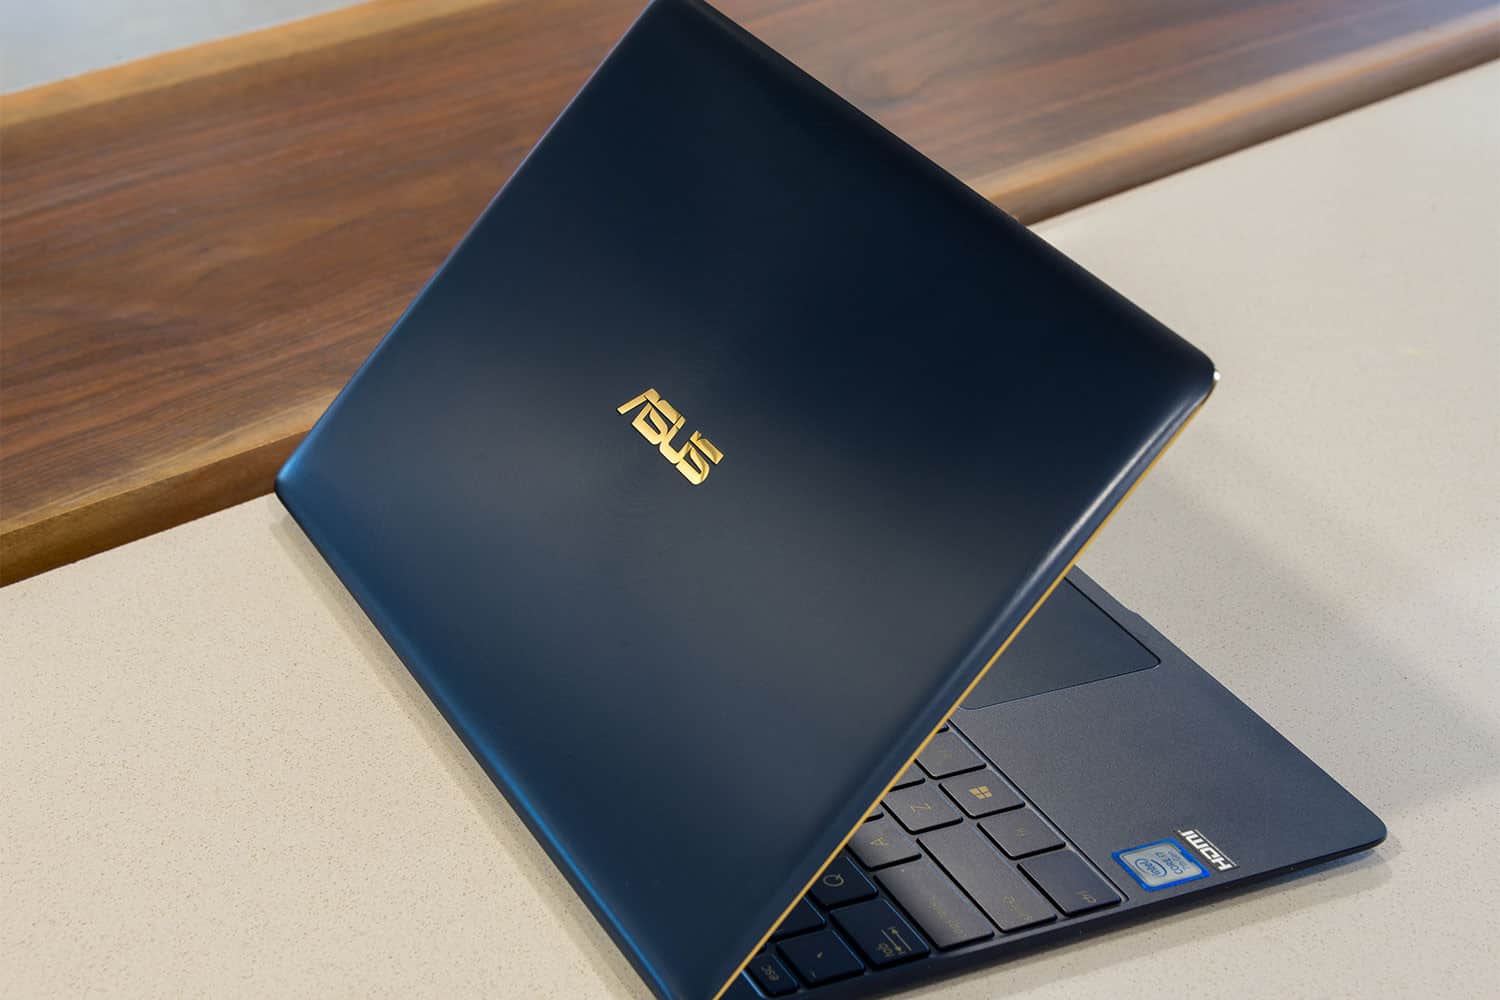 Asus - laptop brand